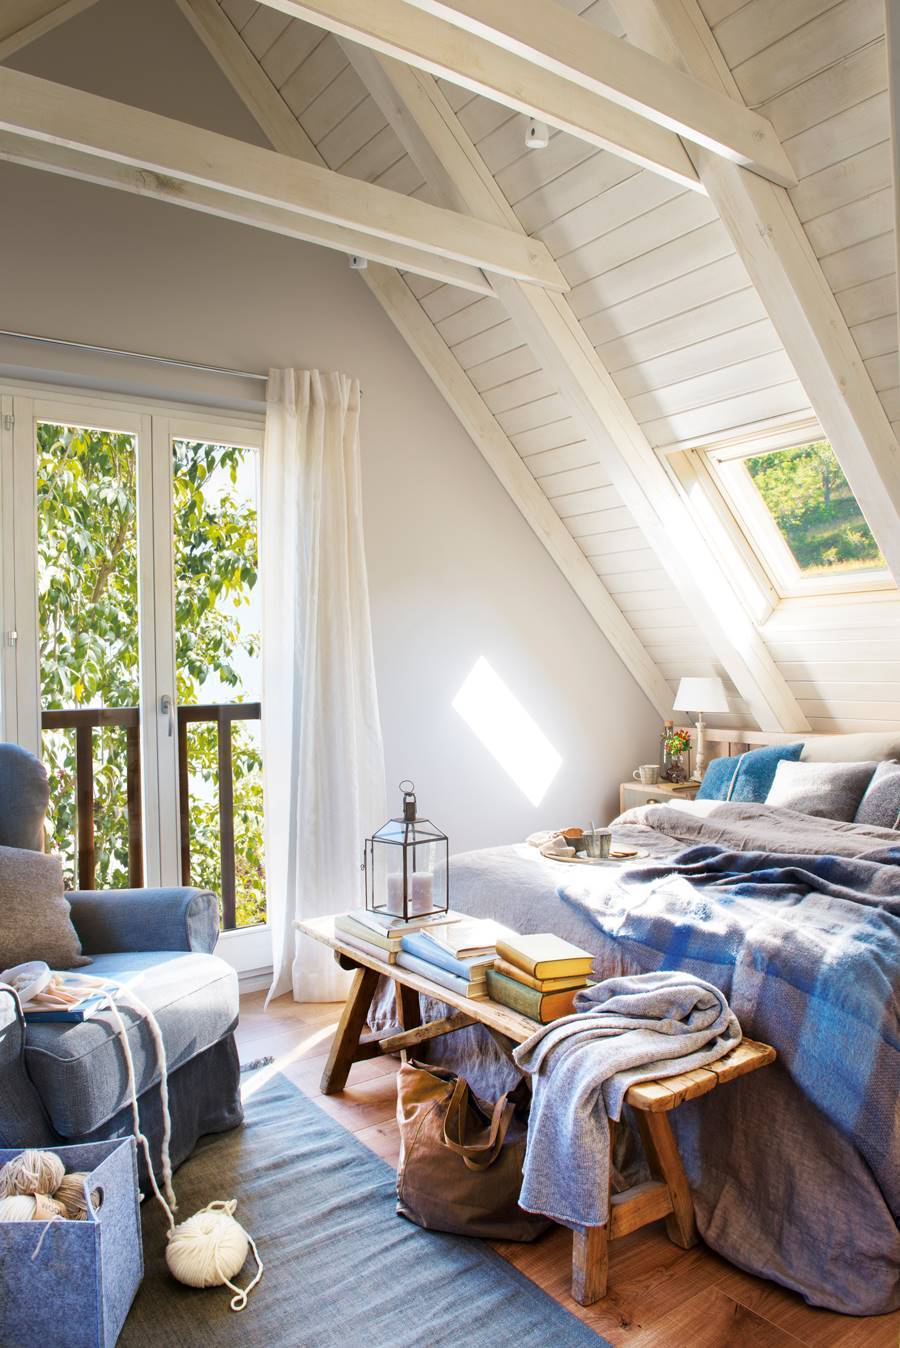 Dormitorio en buhardilla con ropa azul de invierno.